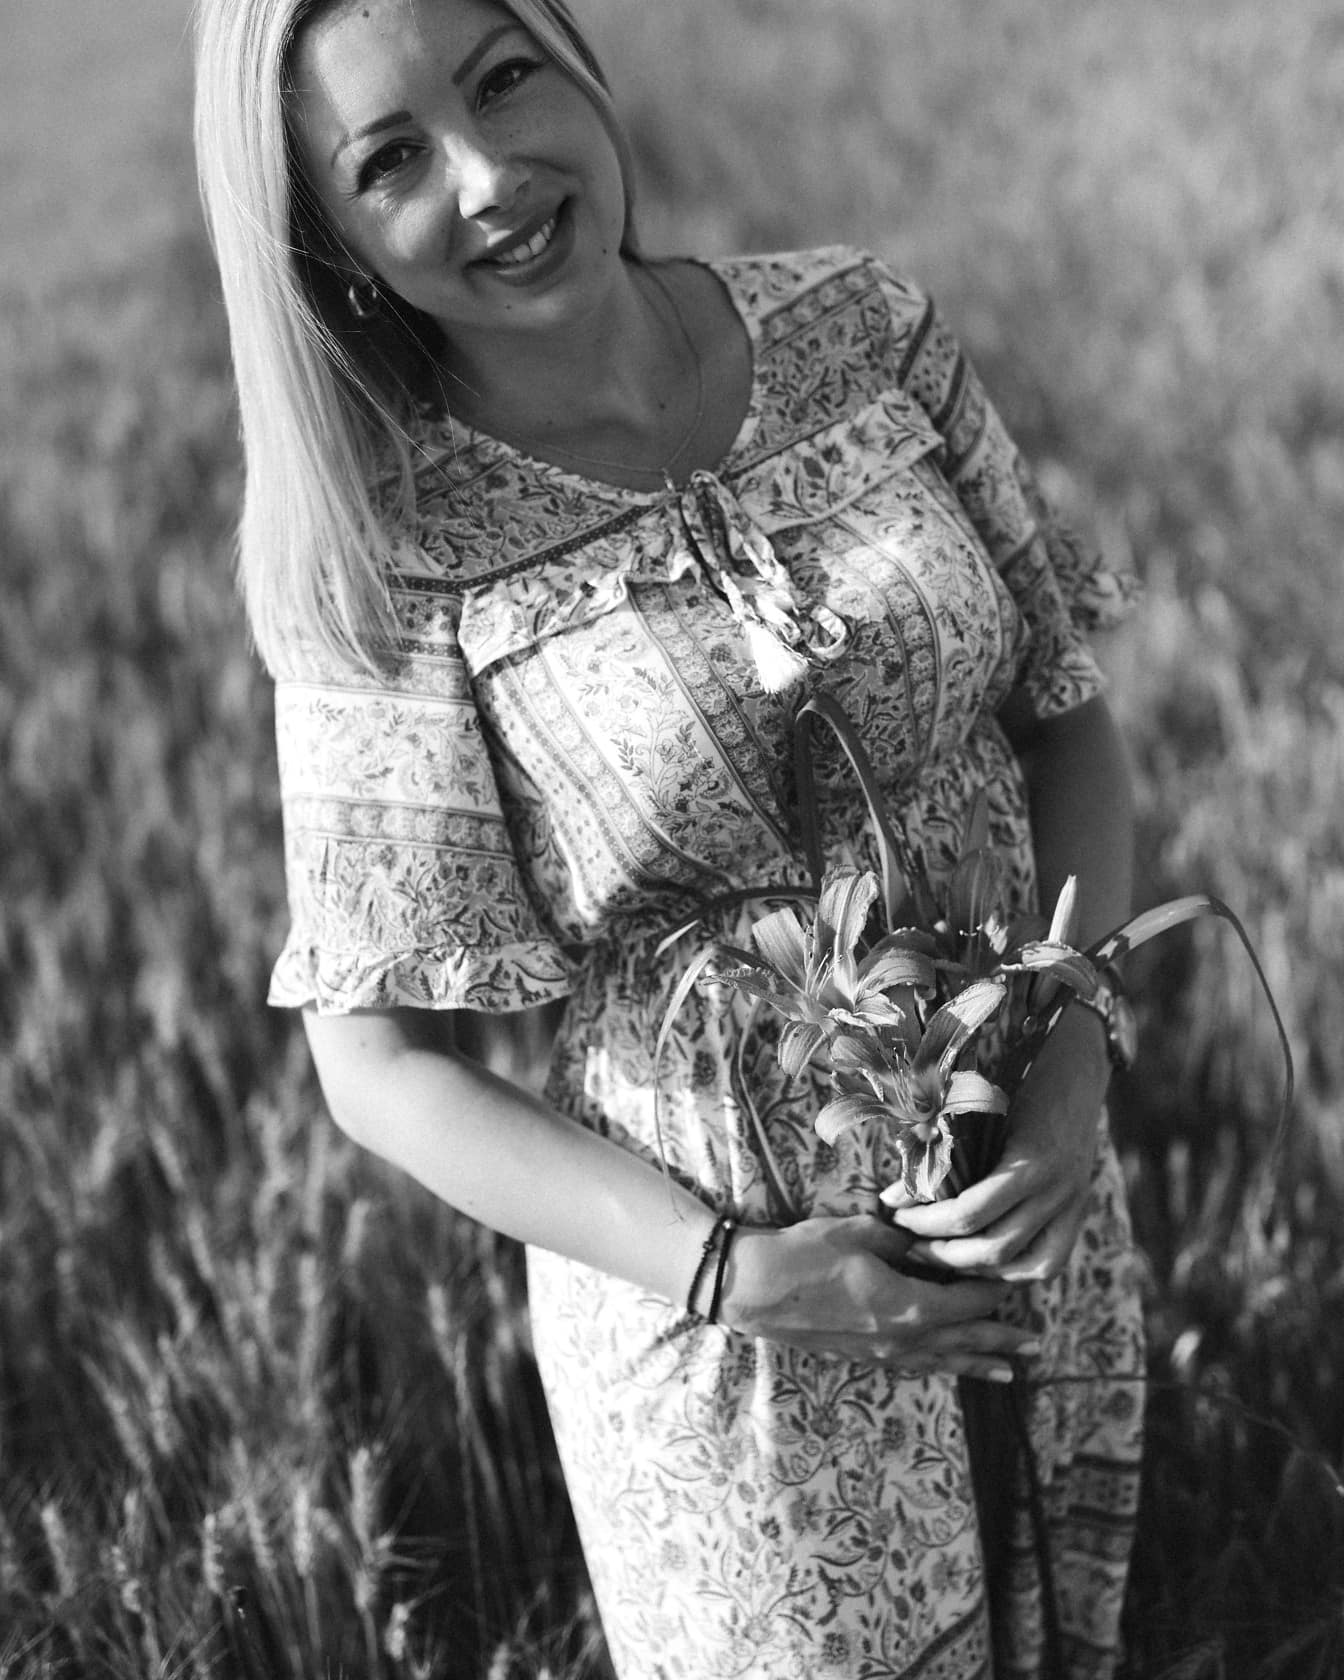 Chân dung đơn sắc của cô gái tóc vàng tuyệt đẹp với hoa lily trên cánh đồng lúa mì